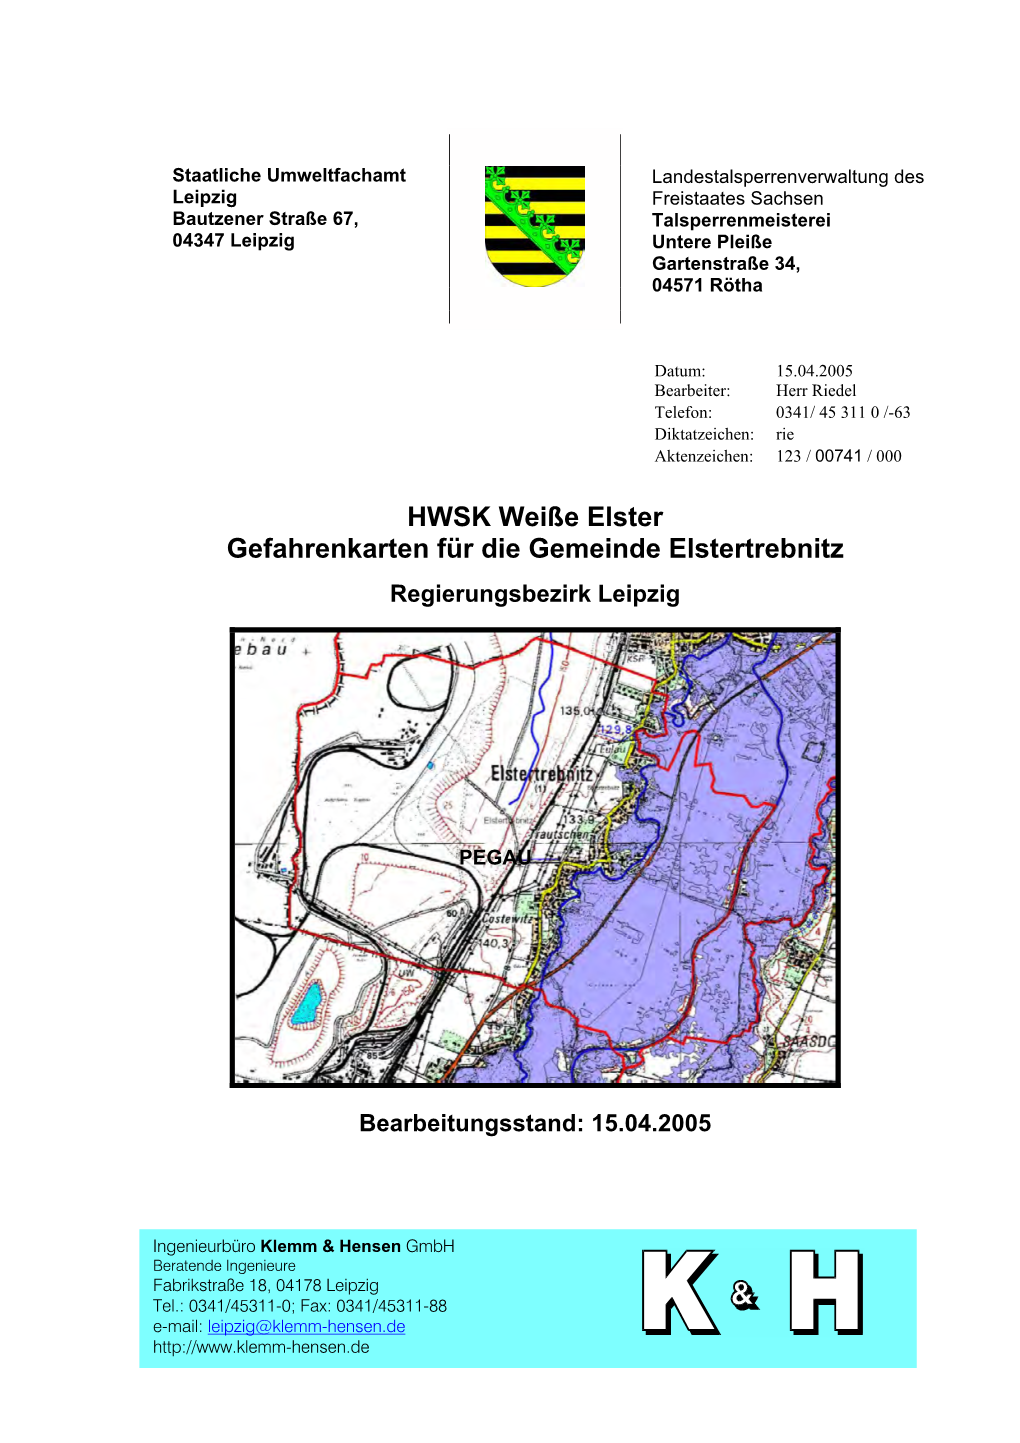 HWSK Nr. 32, Gefahrenkarte Gemeinde Elstertrebnitz